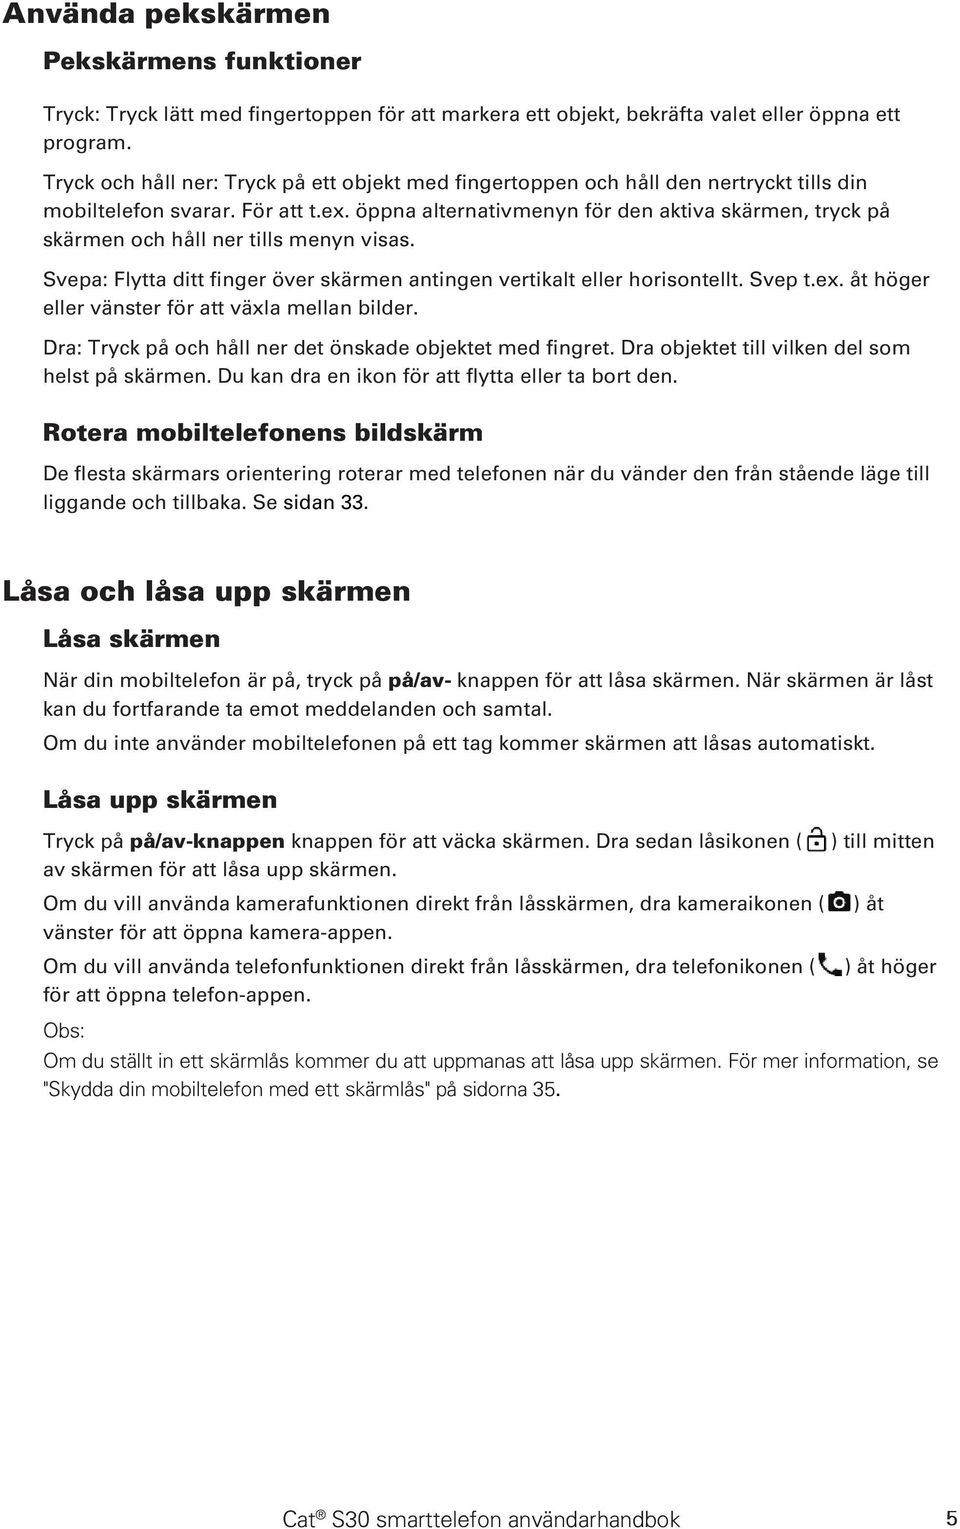 Cat S30 smarttelefon Användarhandbok - PDF Gratis nedladdning